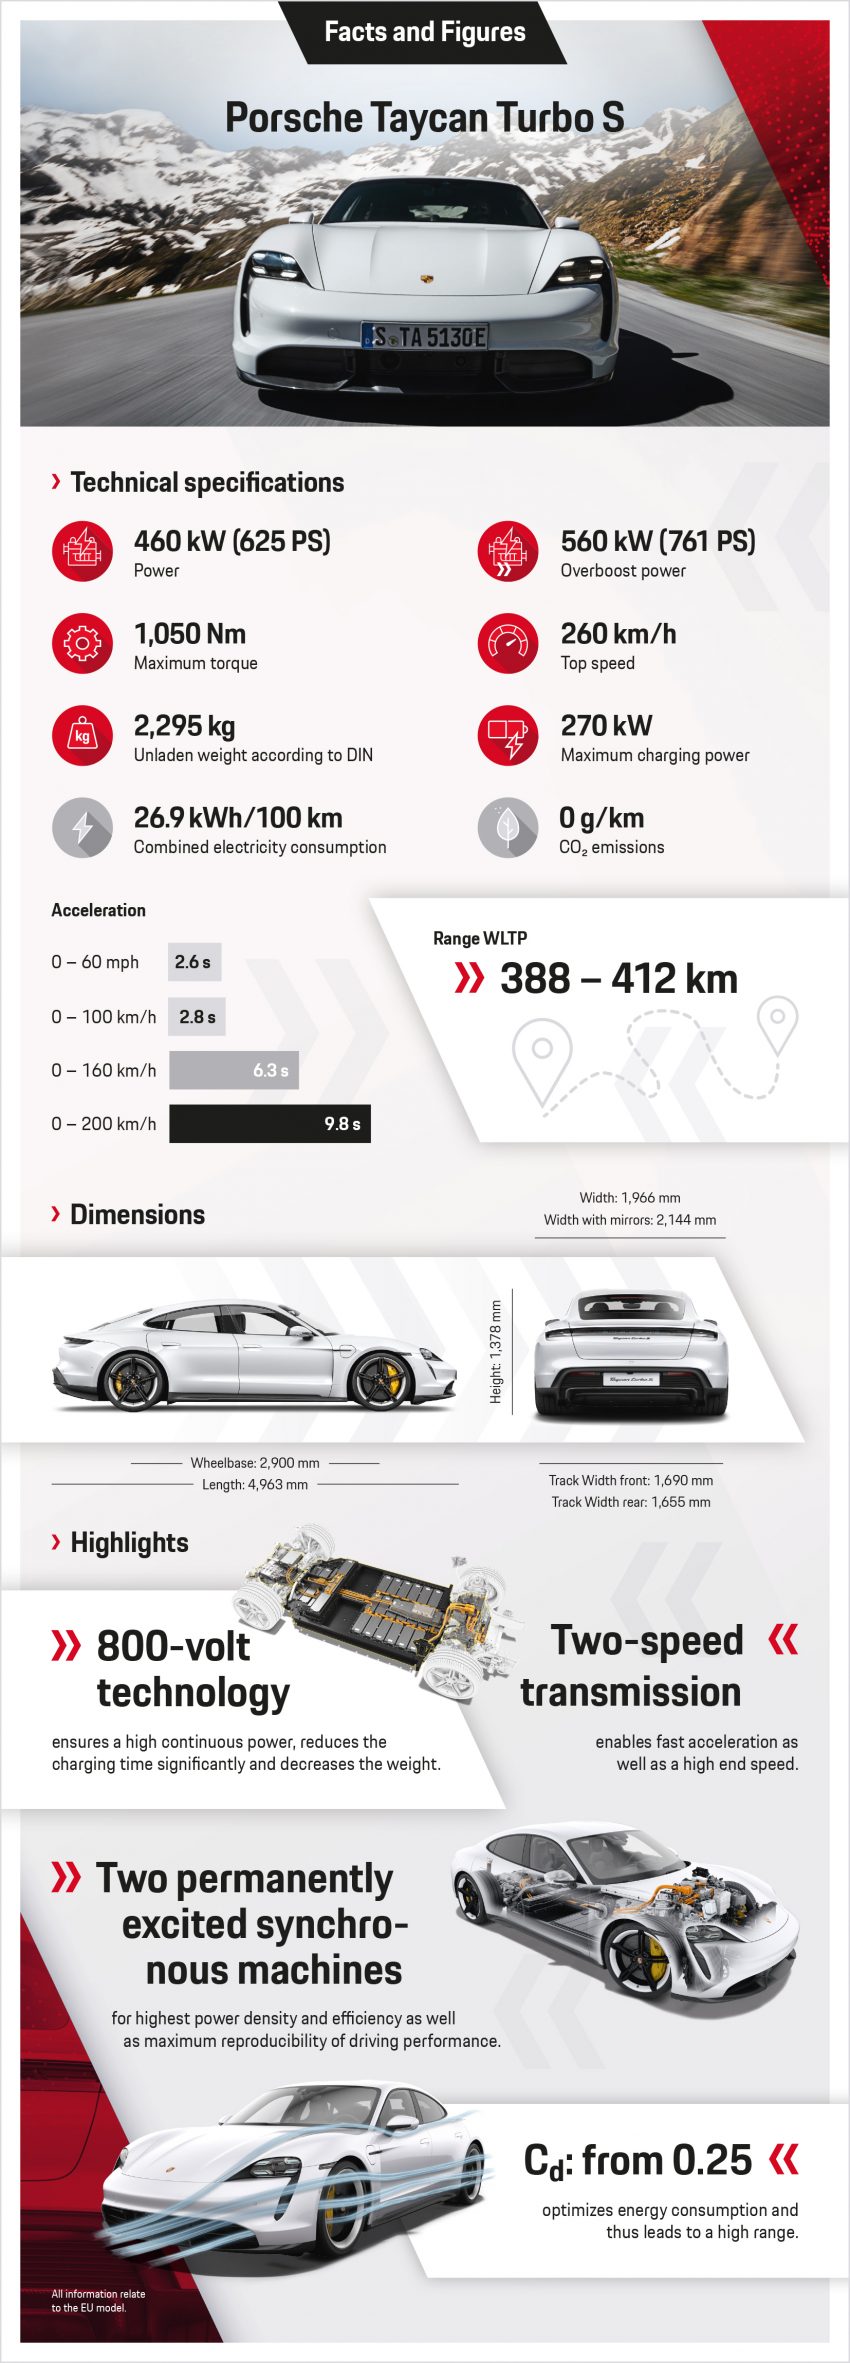 首款纯电动车面世, Porsche Taycan 全球首发, 2.8秒破百 104962